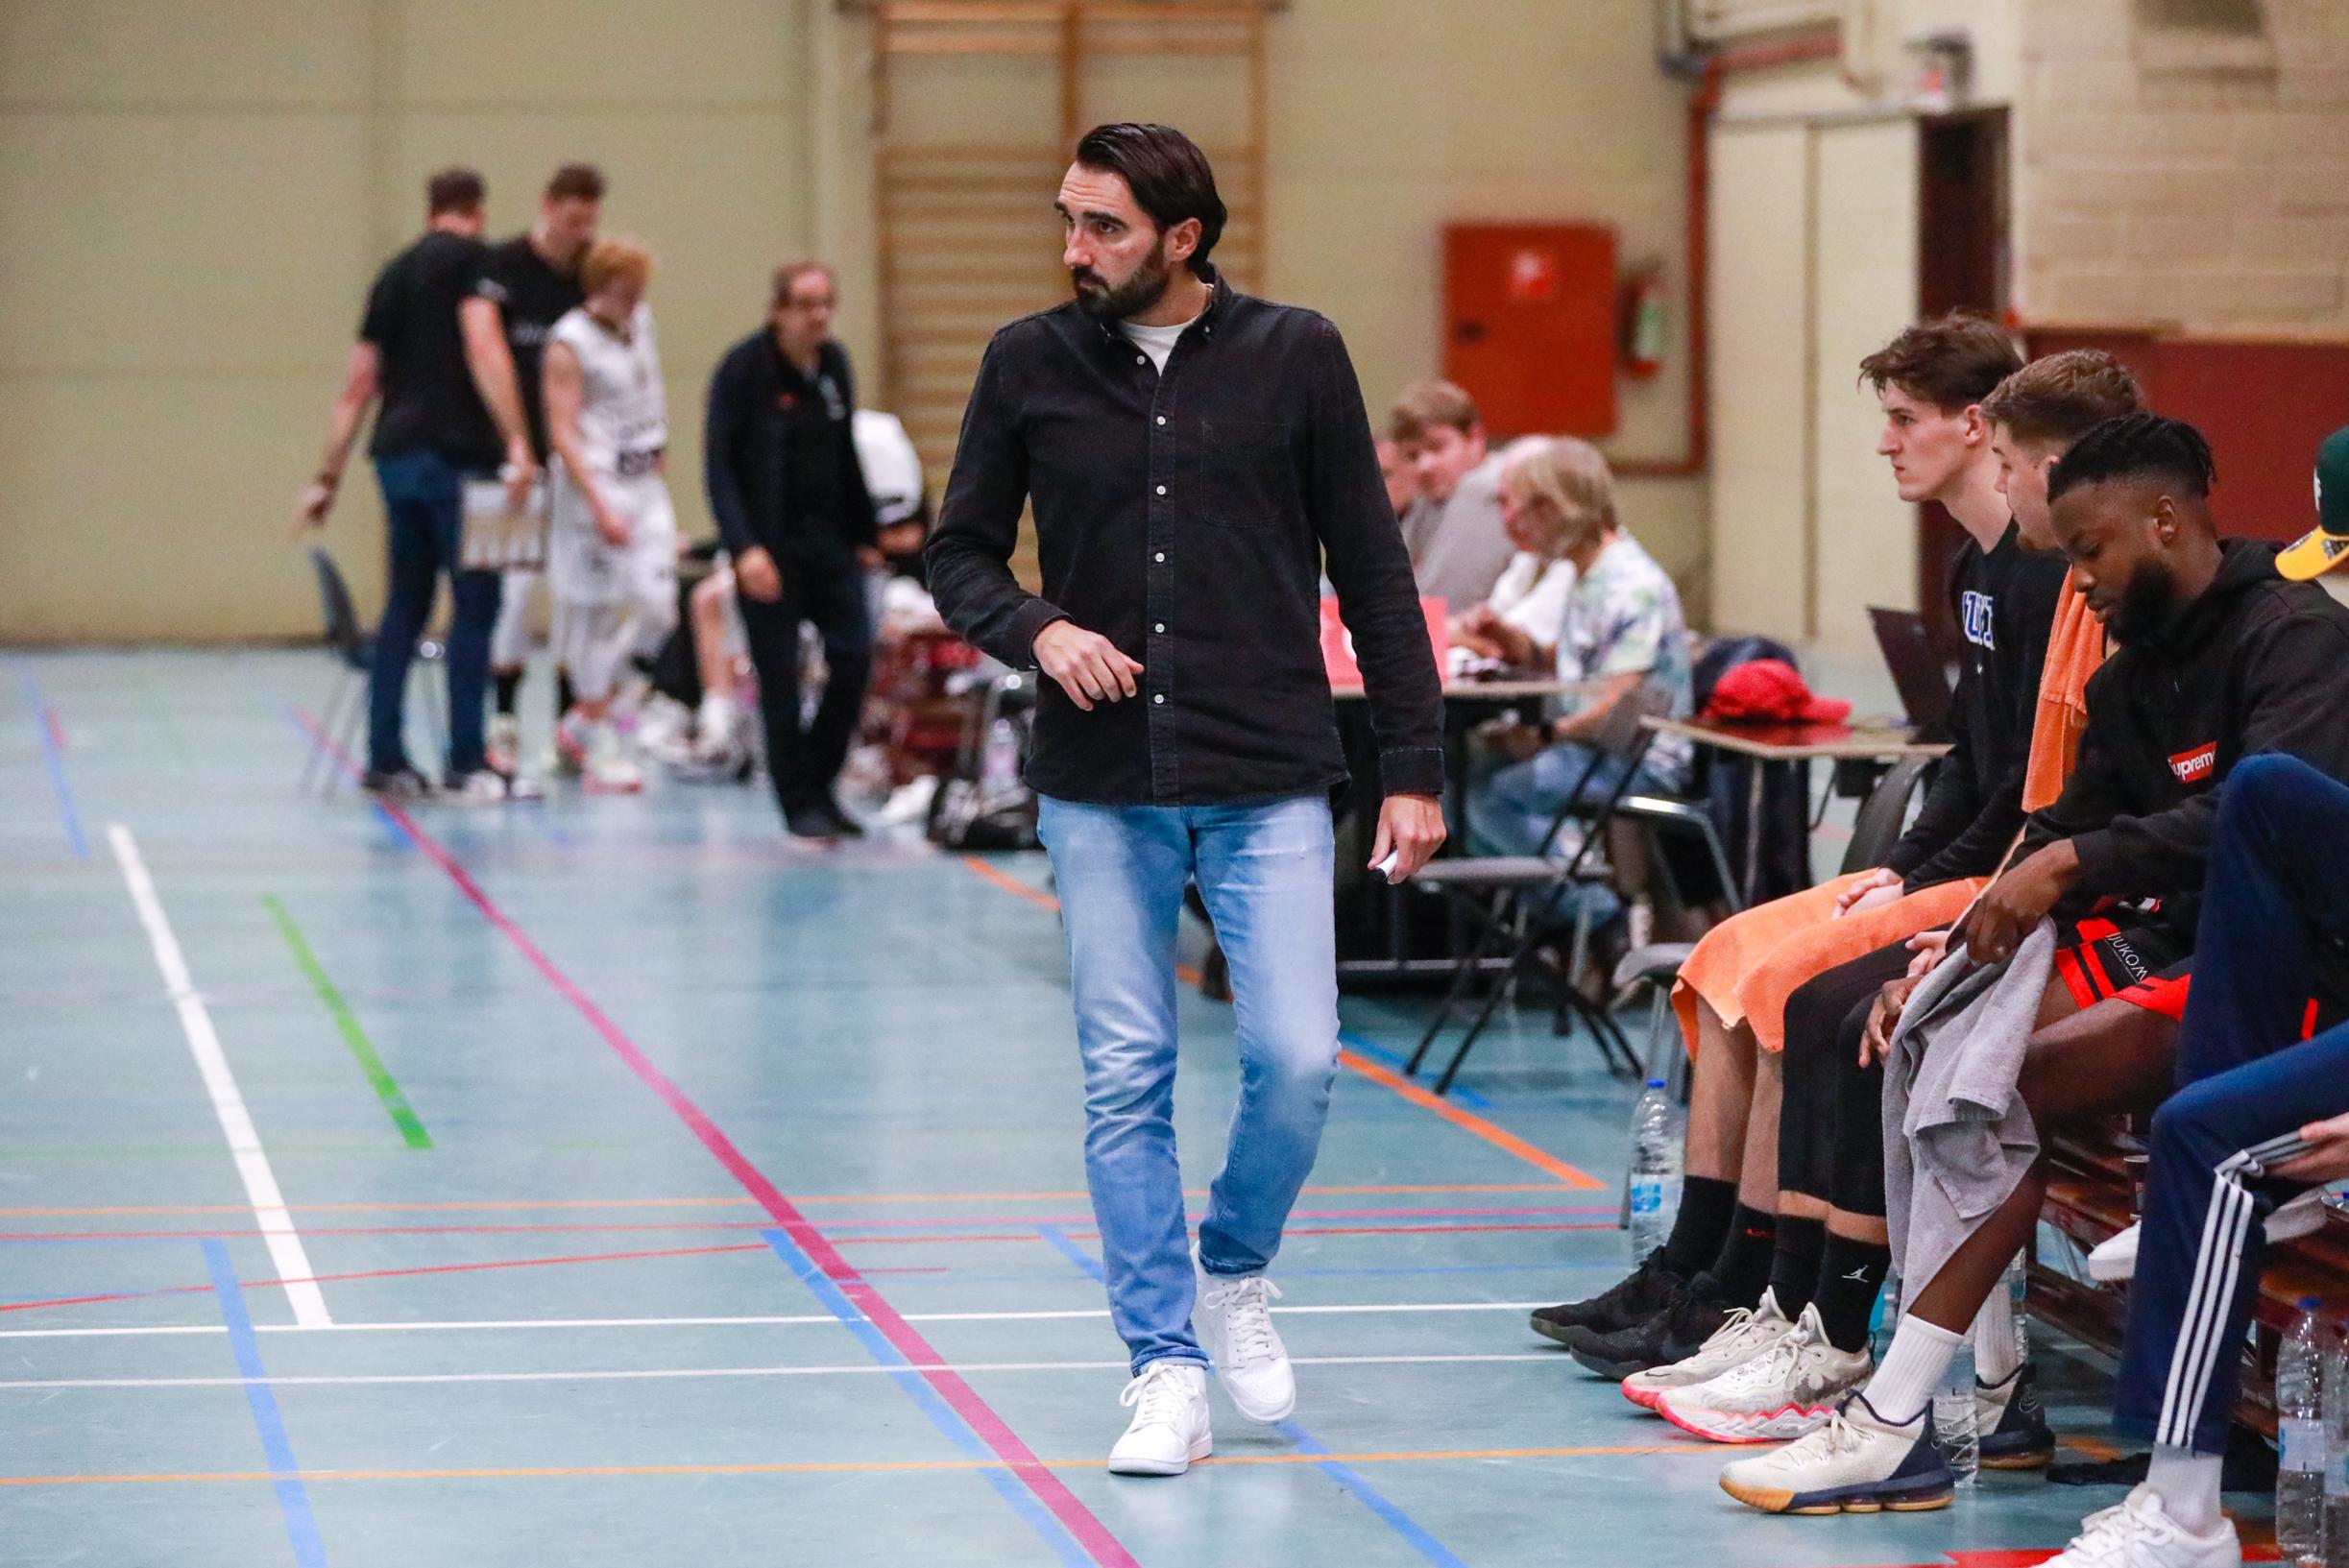 “Je kunt evengoed je geld in de Schelde gooien”: doek valt over basketbalclub in tweede klasse, die er meteen mee kapt